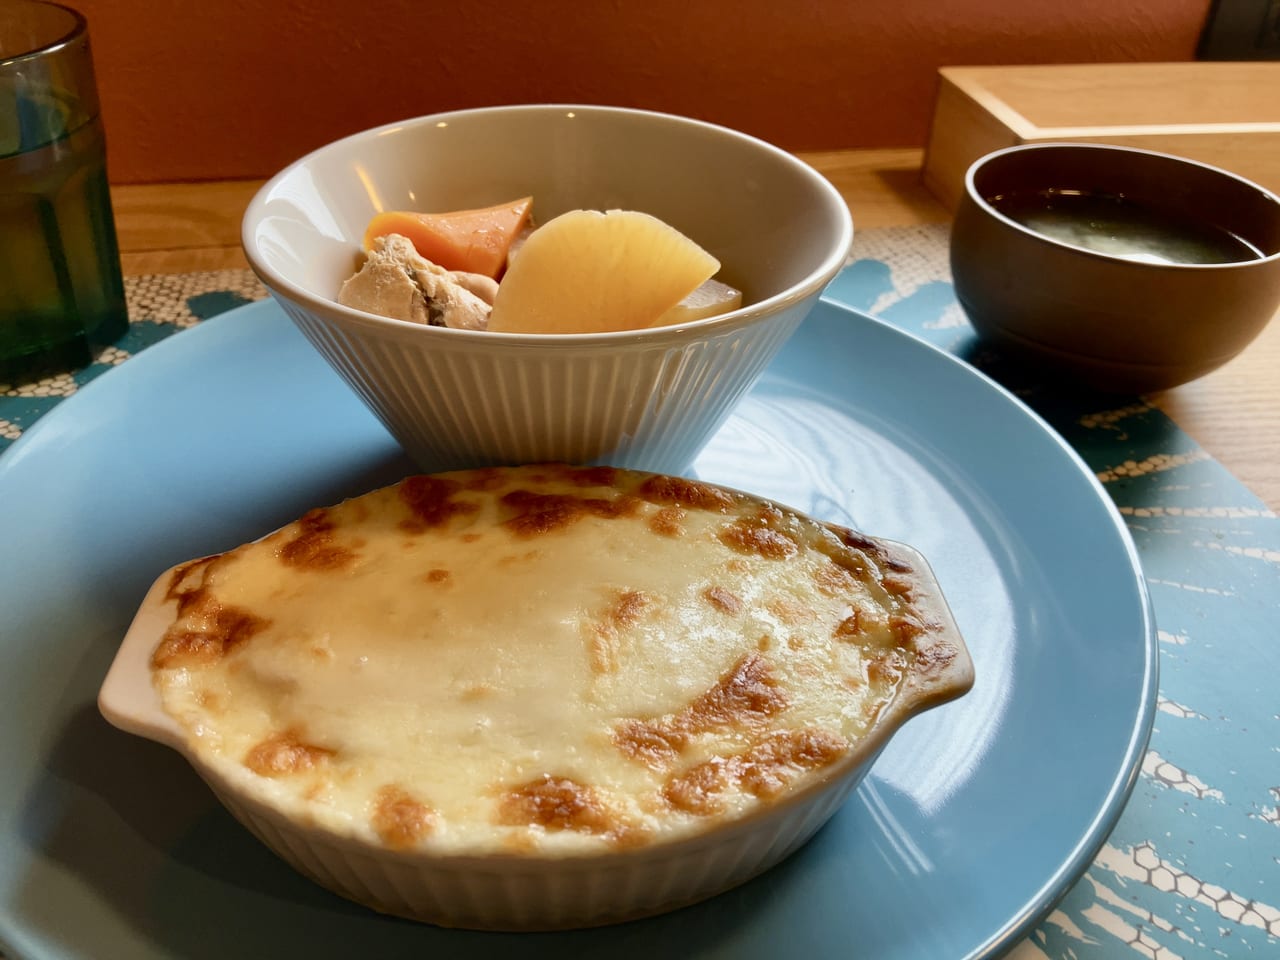 ワッフルの提供は終了したけど、ほっこり美味しいランチが食べられる。アリオ札幌に近い「モニュセドカフェ」に行ってみた。